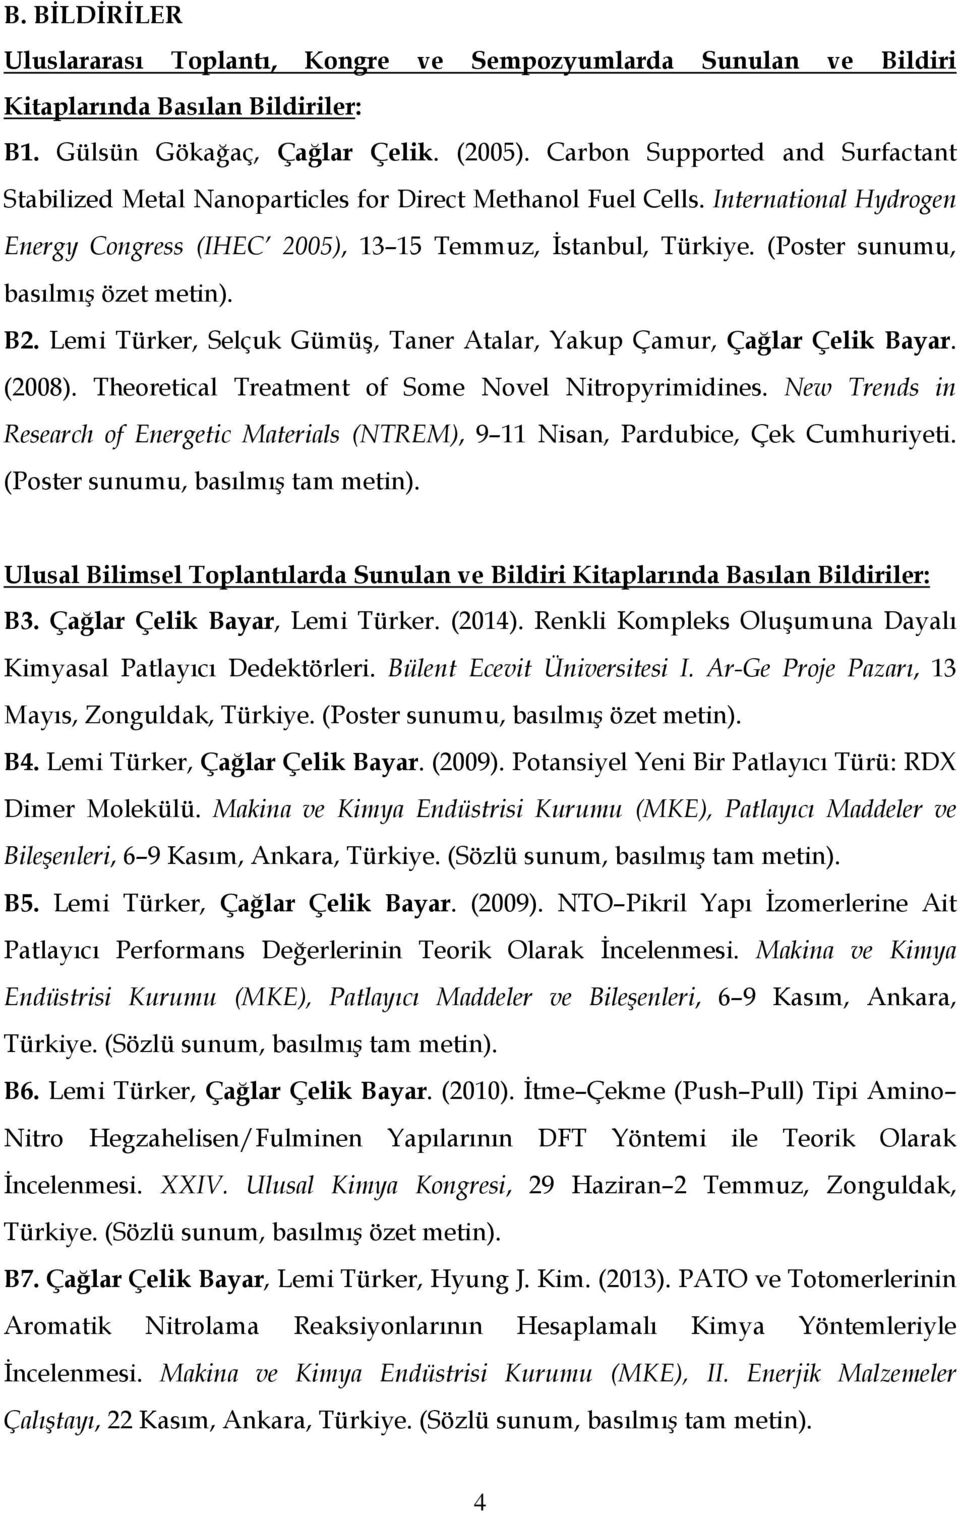 (Poster sunumu, basılmış özet metin). B2. Lemi Türker, Selçuk Gümüş, Taner Atalar, Yakup Çamur, Çağlar Çelik Bayar. (2008). Theoretical Treatment of Some Novel Nitropyrimidines.